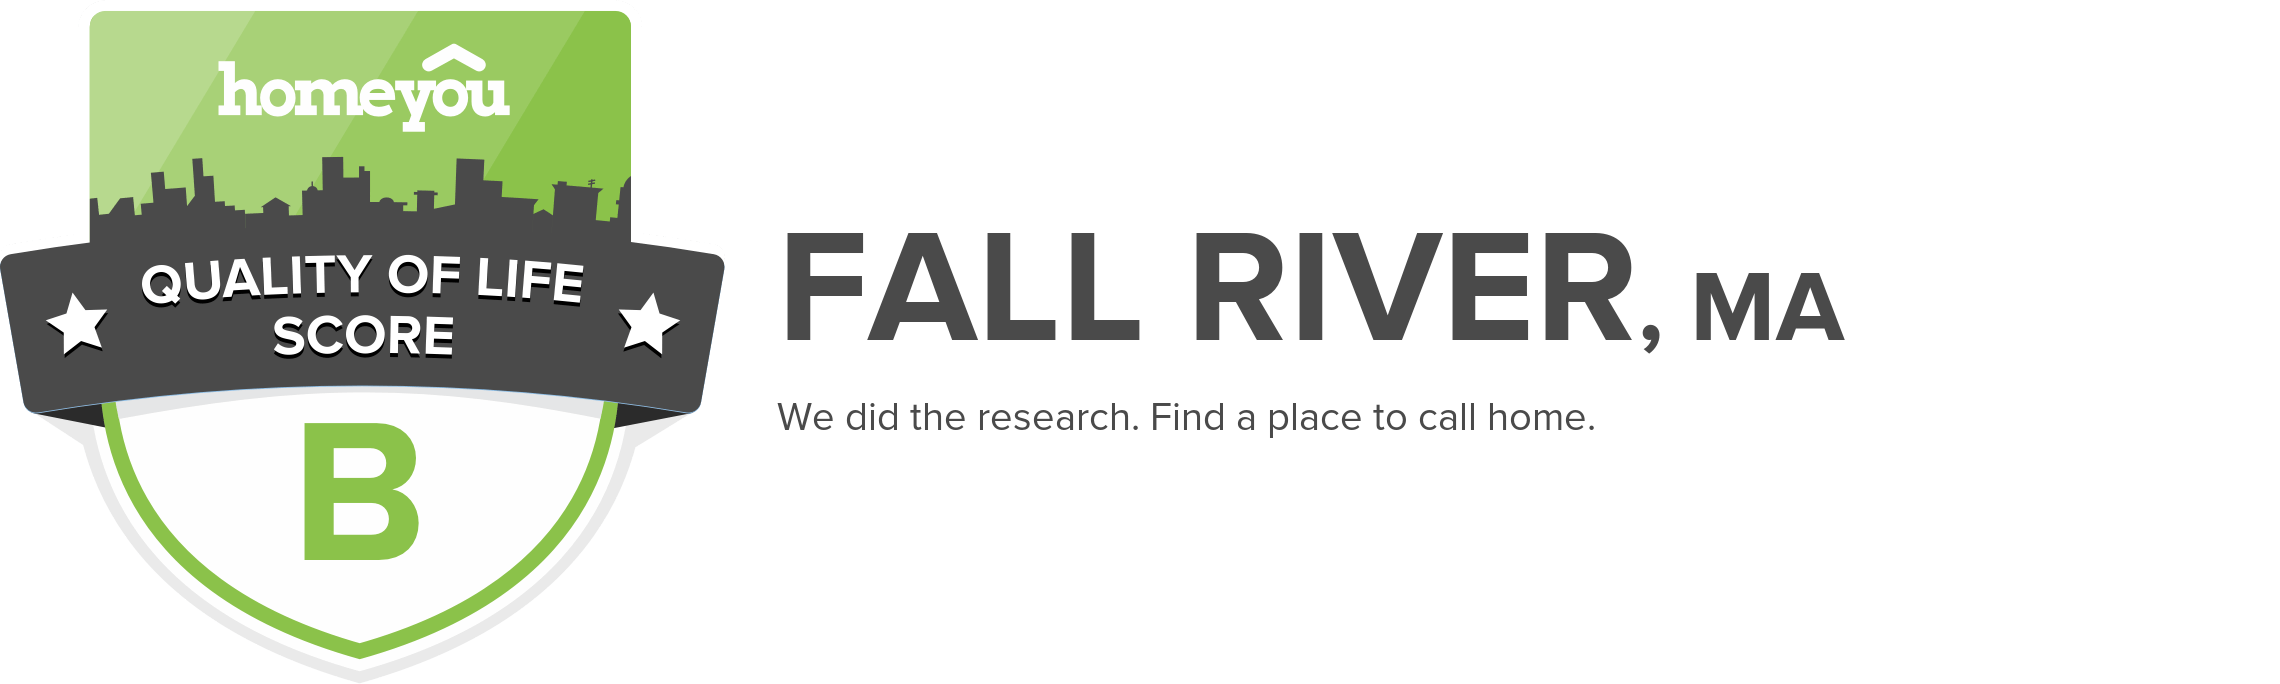 Fall River, MA